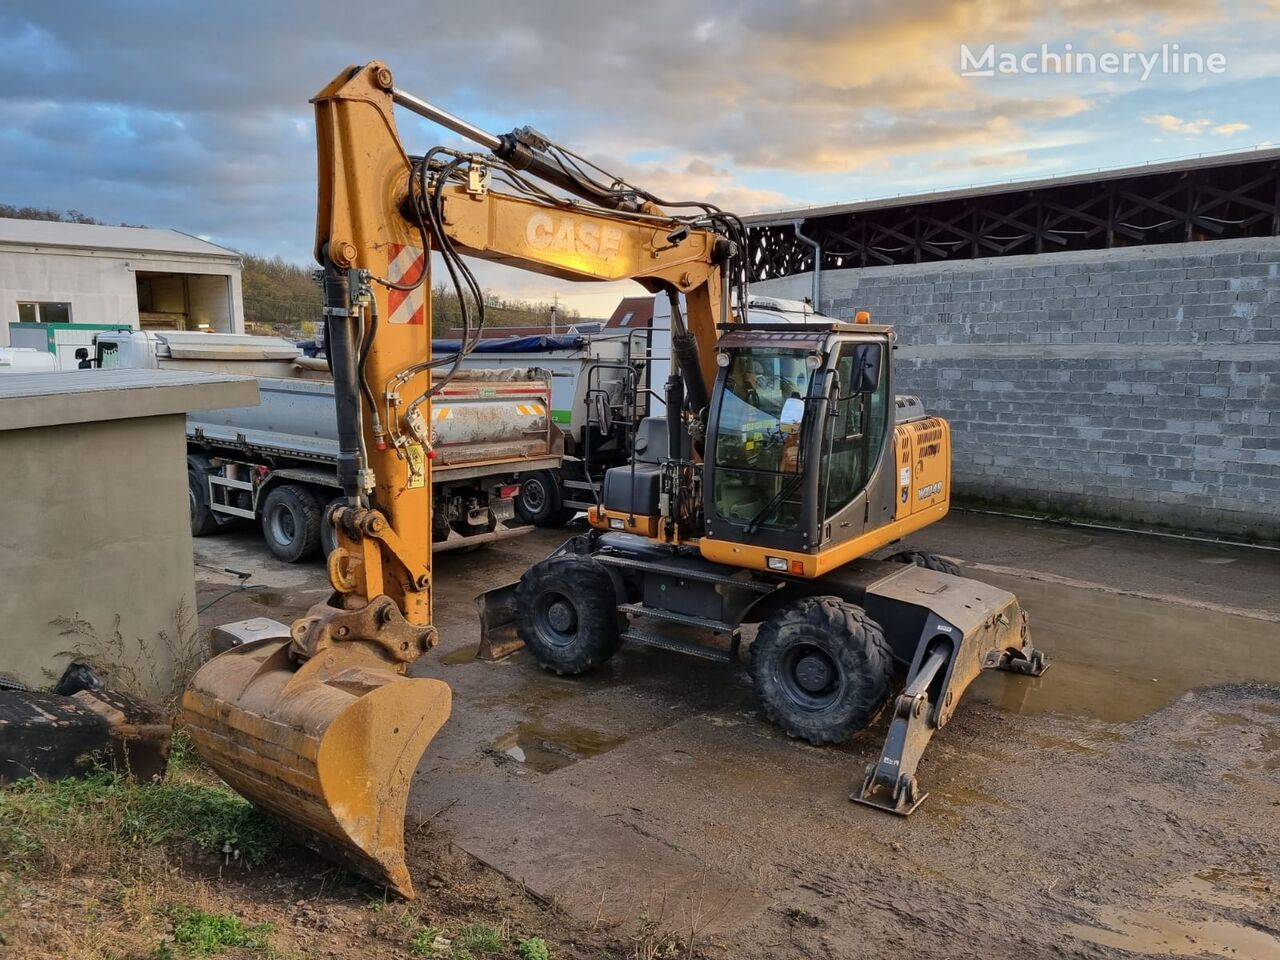 Case WX 148 wheel excavator